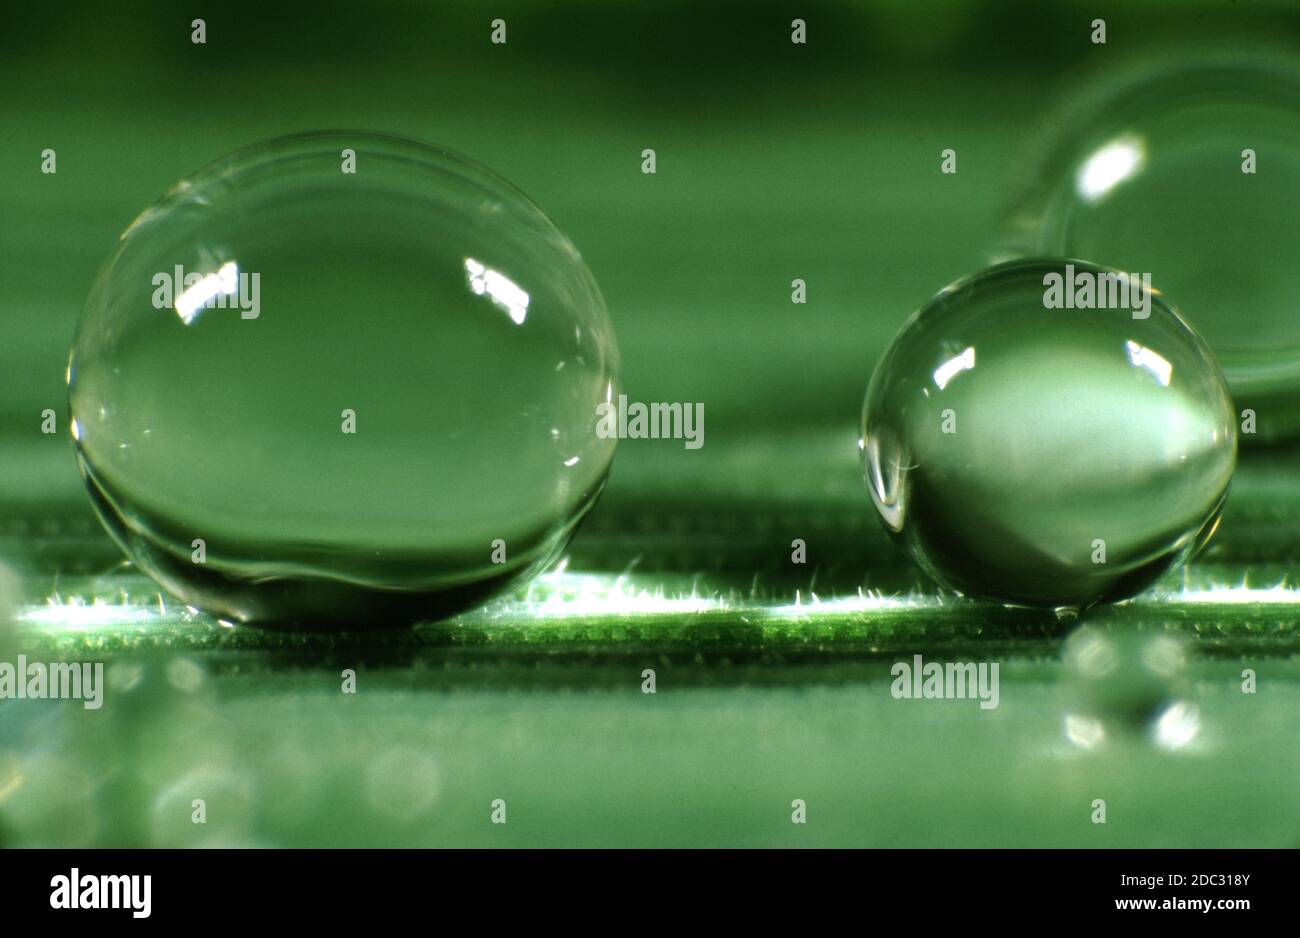 Gocce d'acqua rotonde chiare e trasparenti che si depositano su una superficie idrorepellente cerosa di una foglia d'erba. Le gocce hanno un angolo di contatto molto elevato. Foto Stock